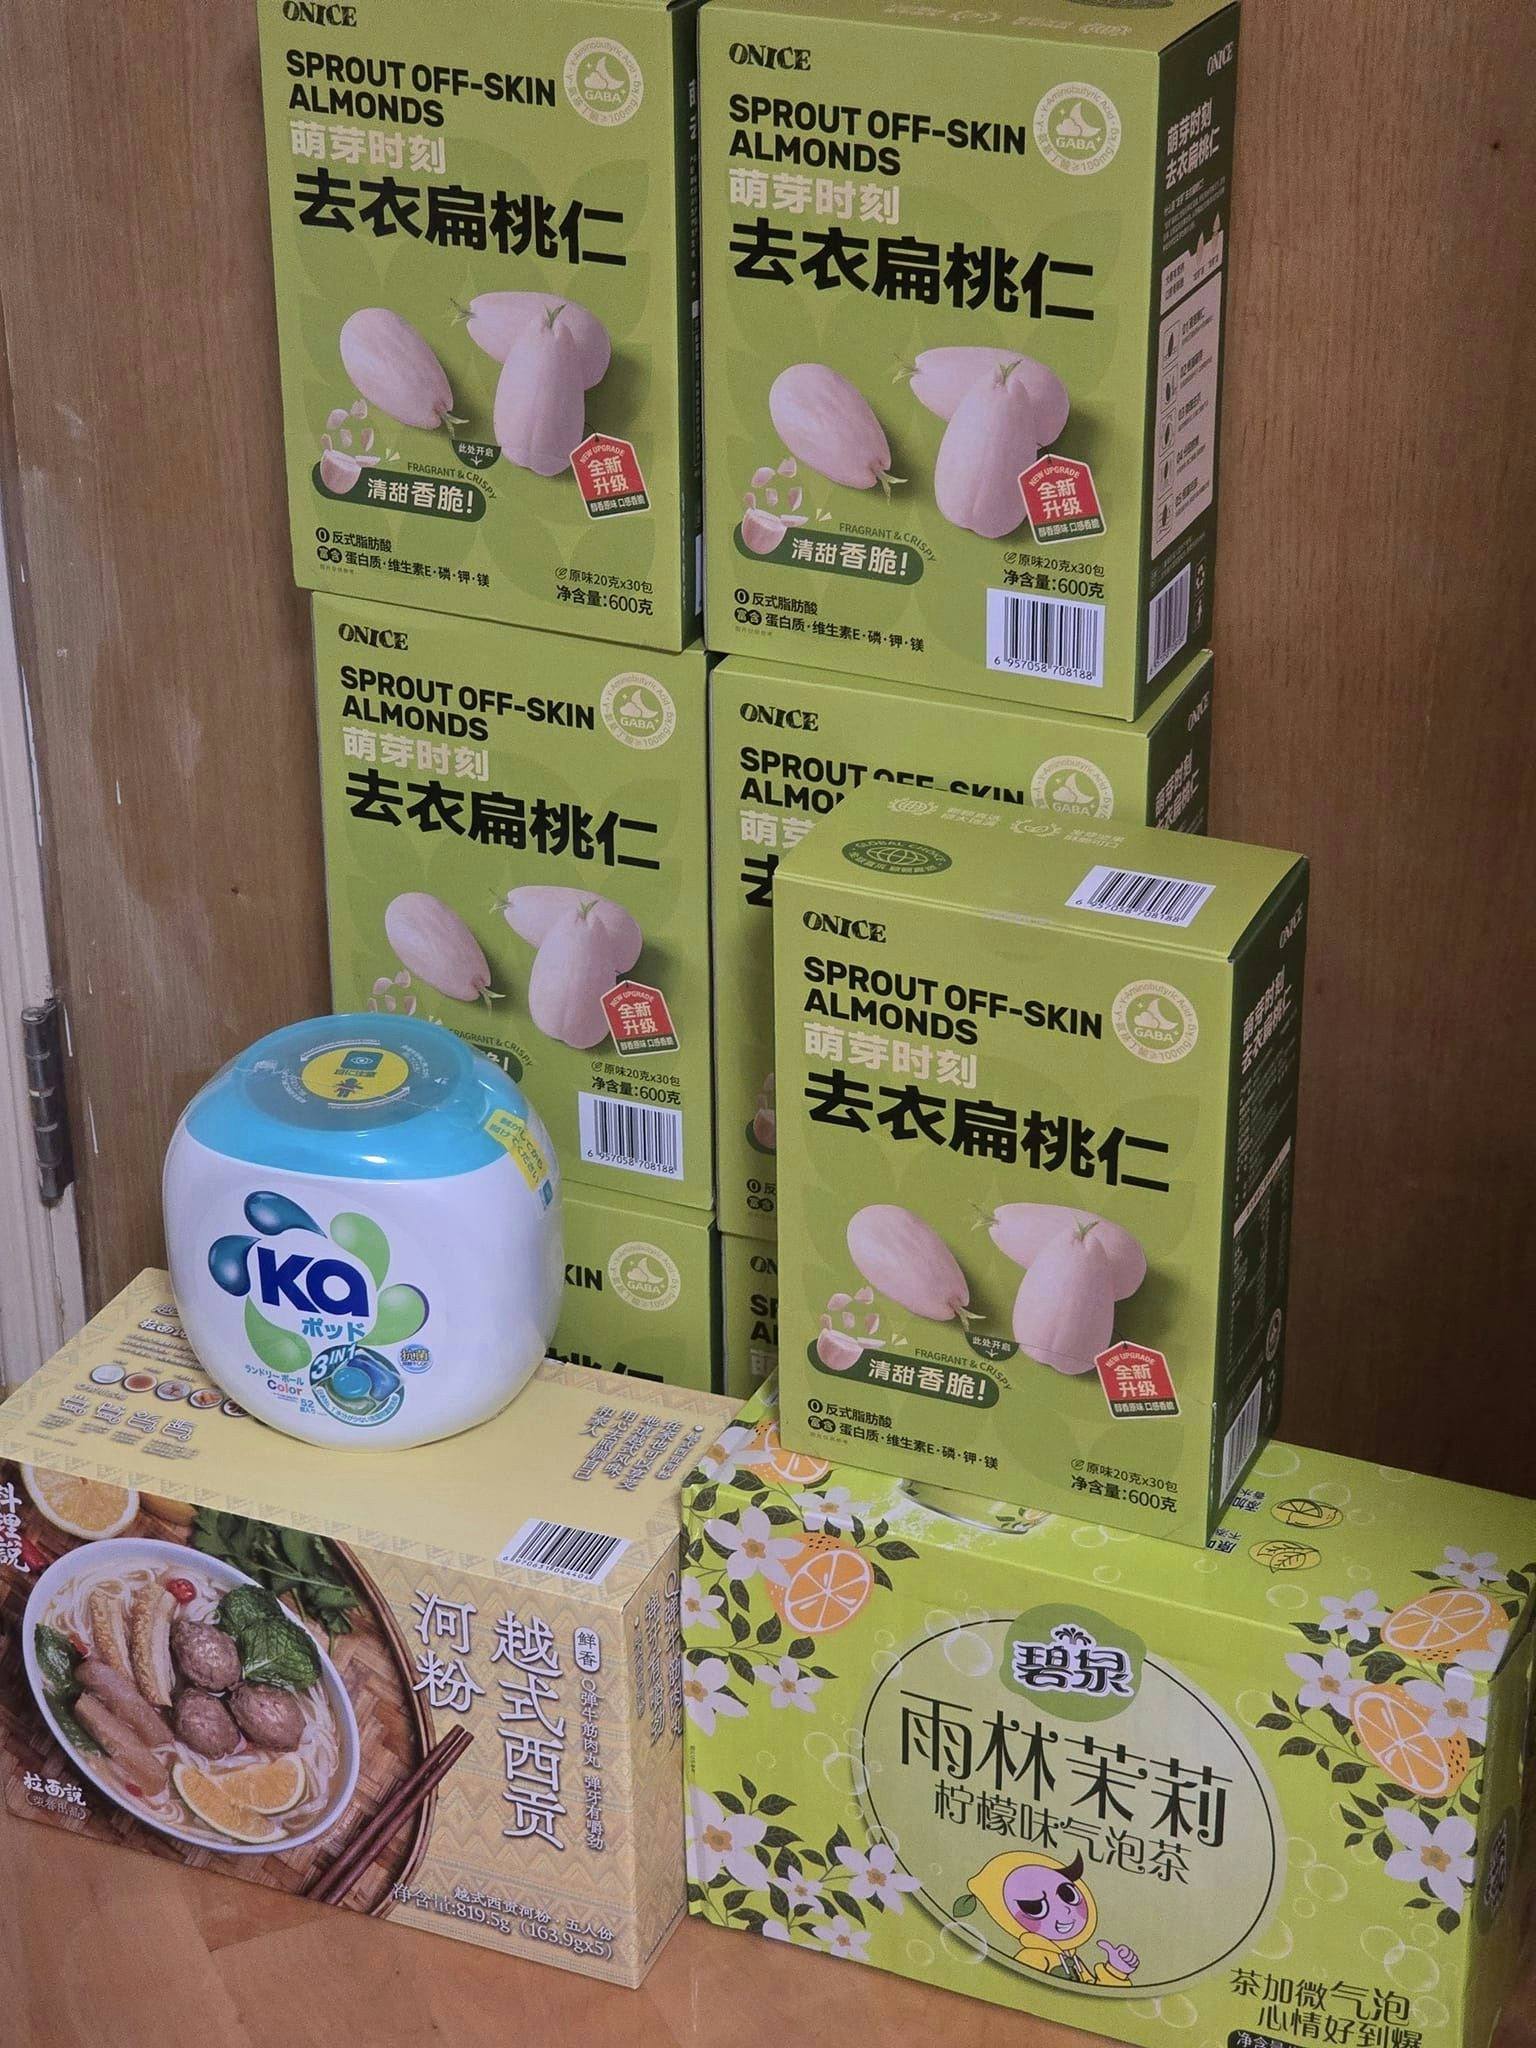 有男网民分享「战利品」，他买了两大箱货品，主要是食品和茶饮，运送纸箱和包装尚算「企理」完整。（Facebook群组「山姆会员商店一香港人群组」）